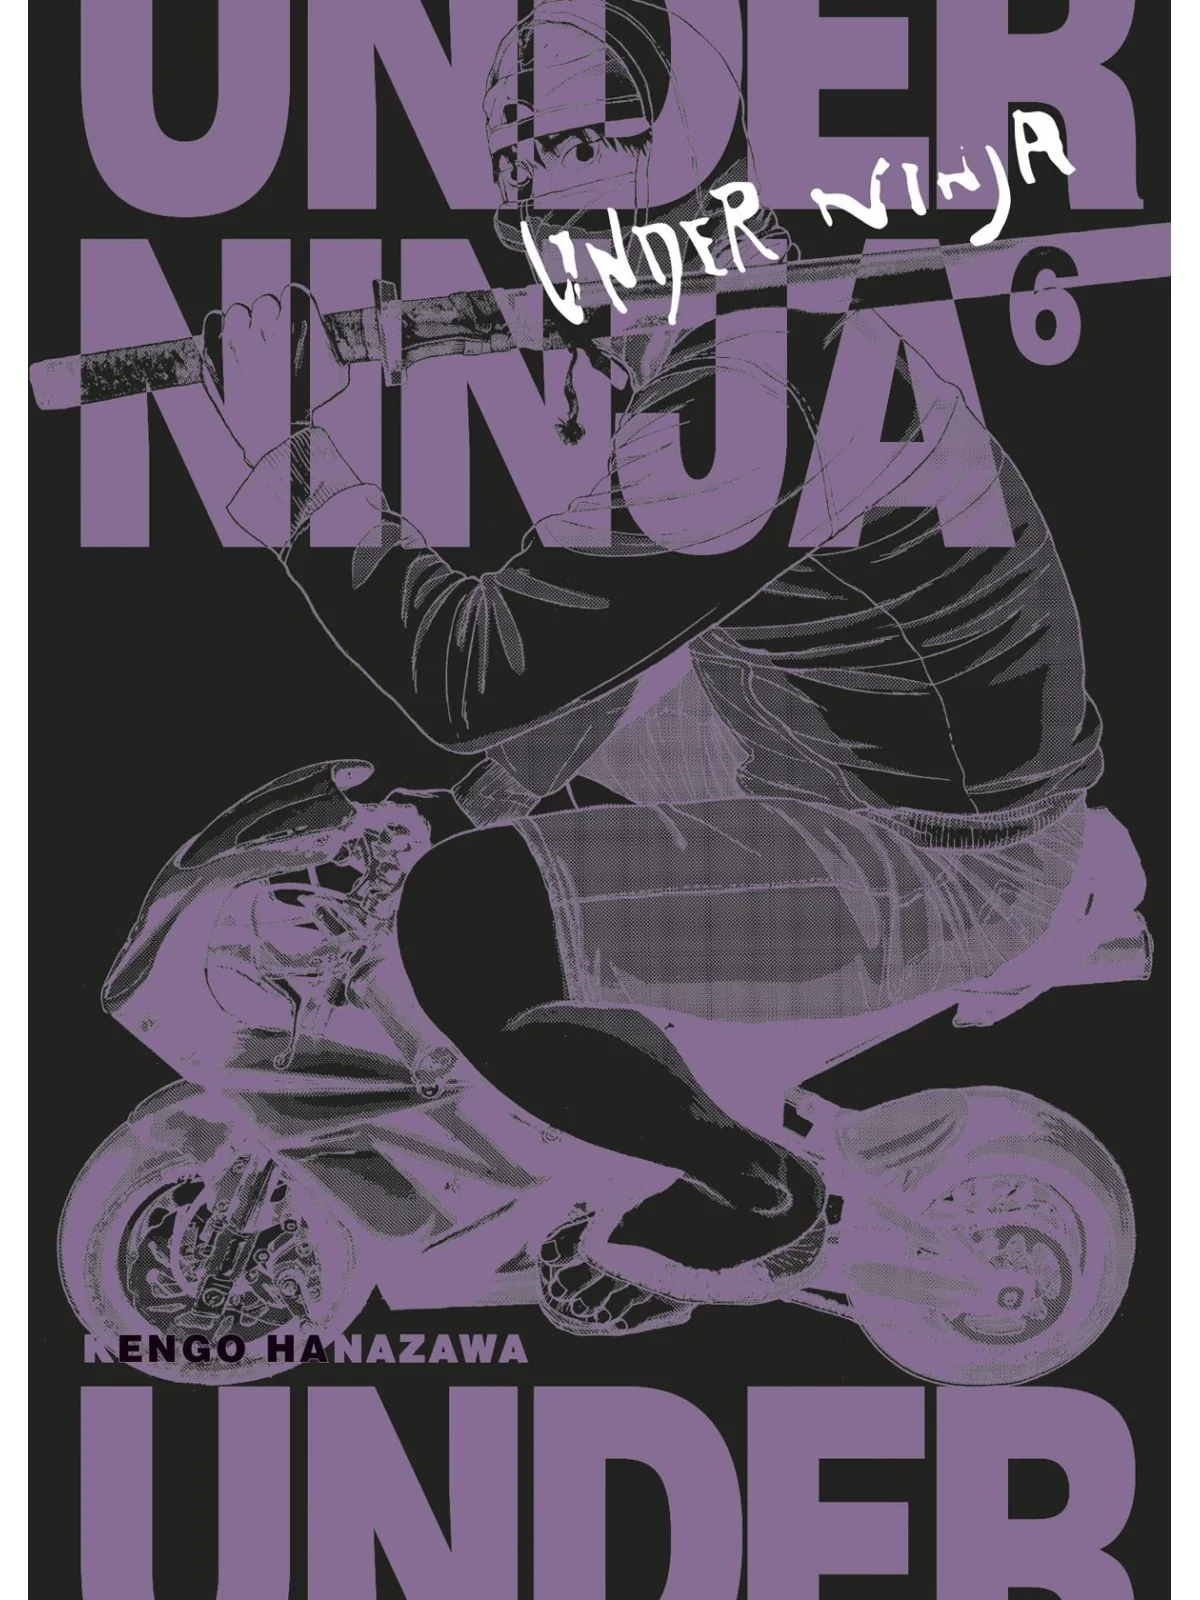 Comprar Under Ninja 06 barato al mejor precio 8,55 € de Norma Editoria